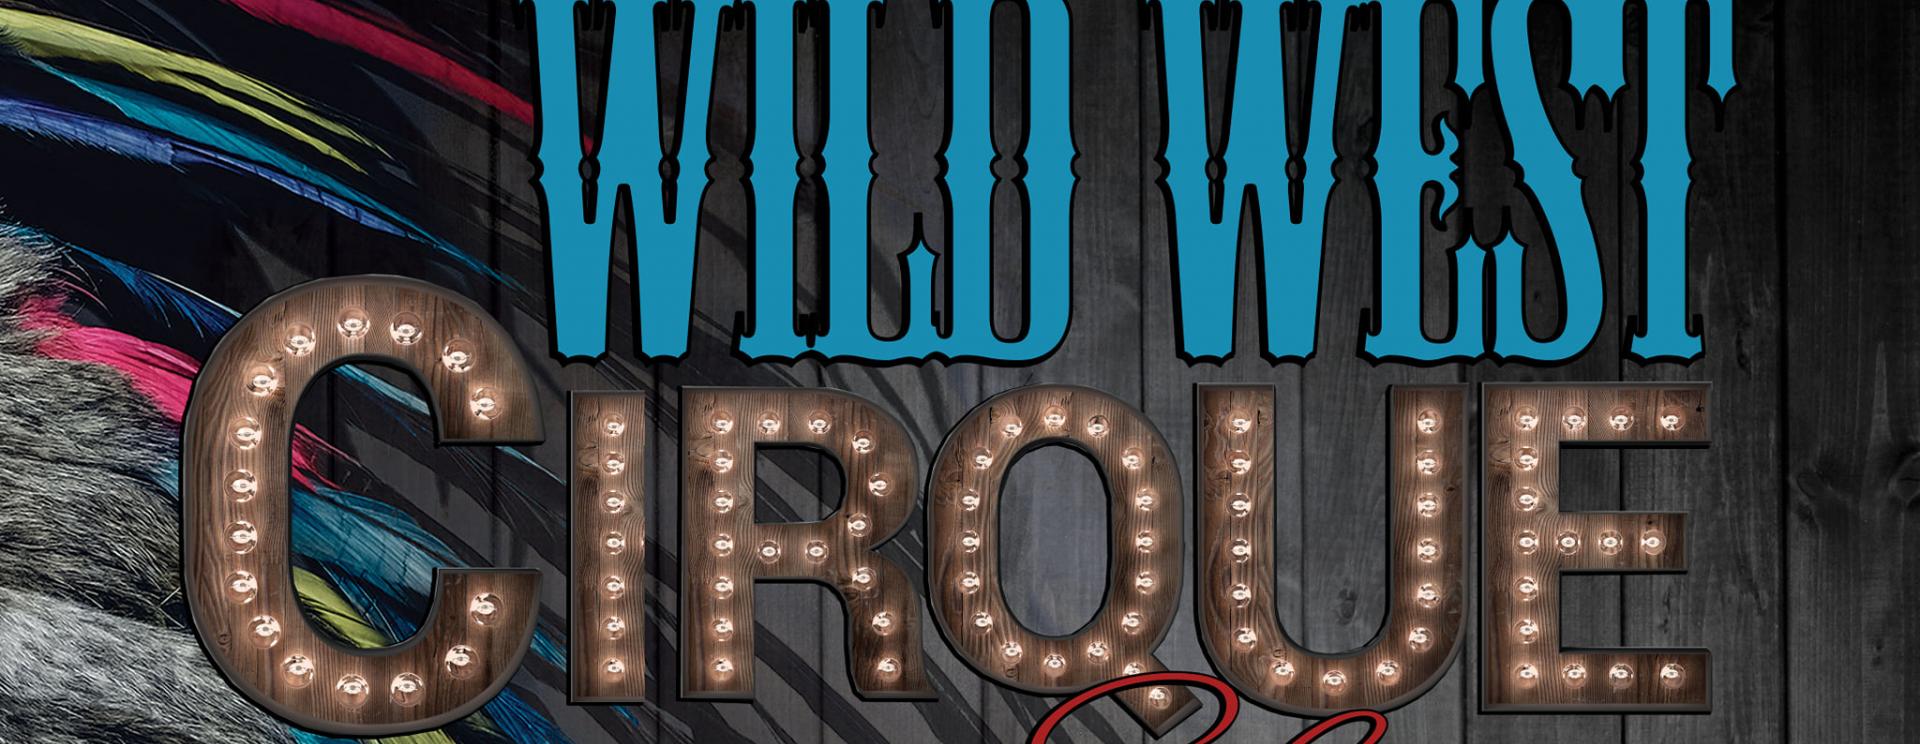 Wild West Cirque Show - A ZirKiss Production